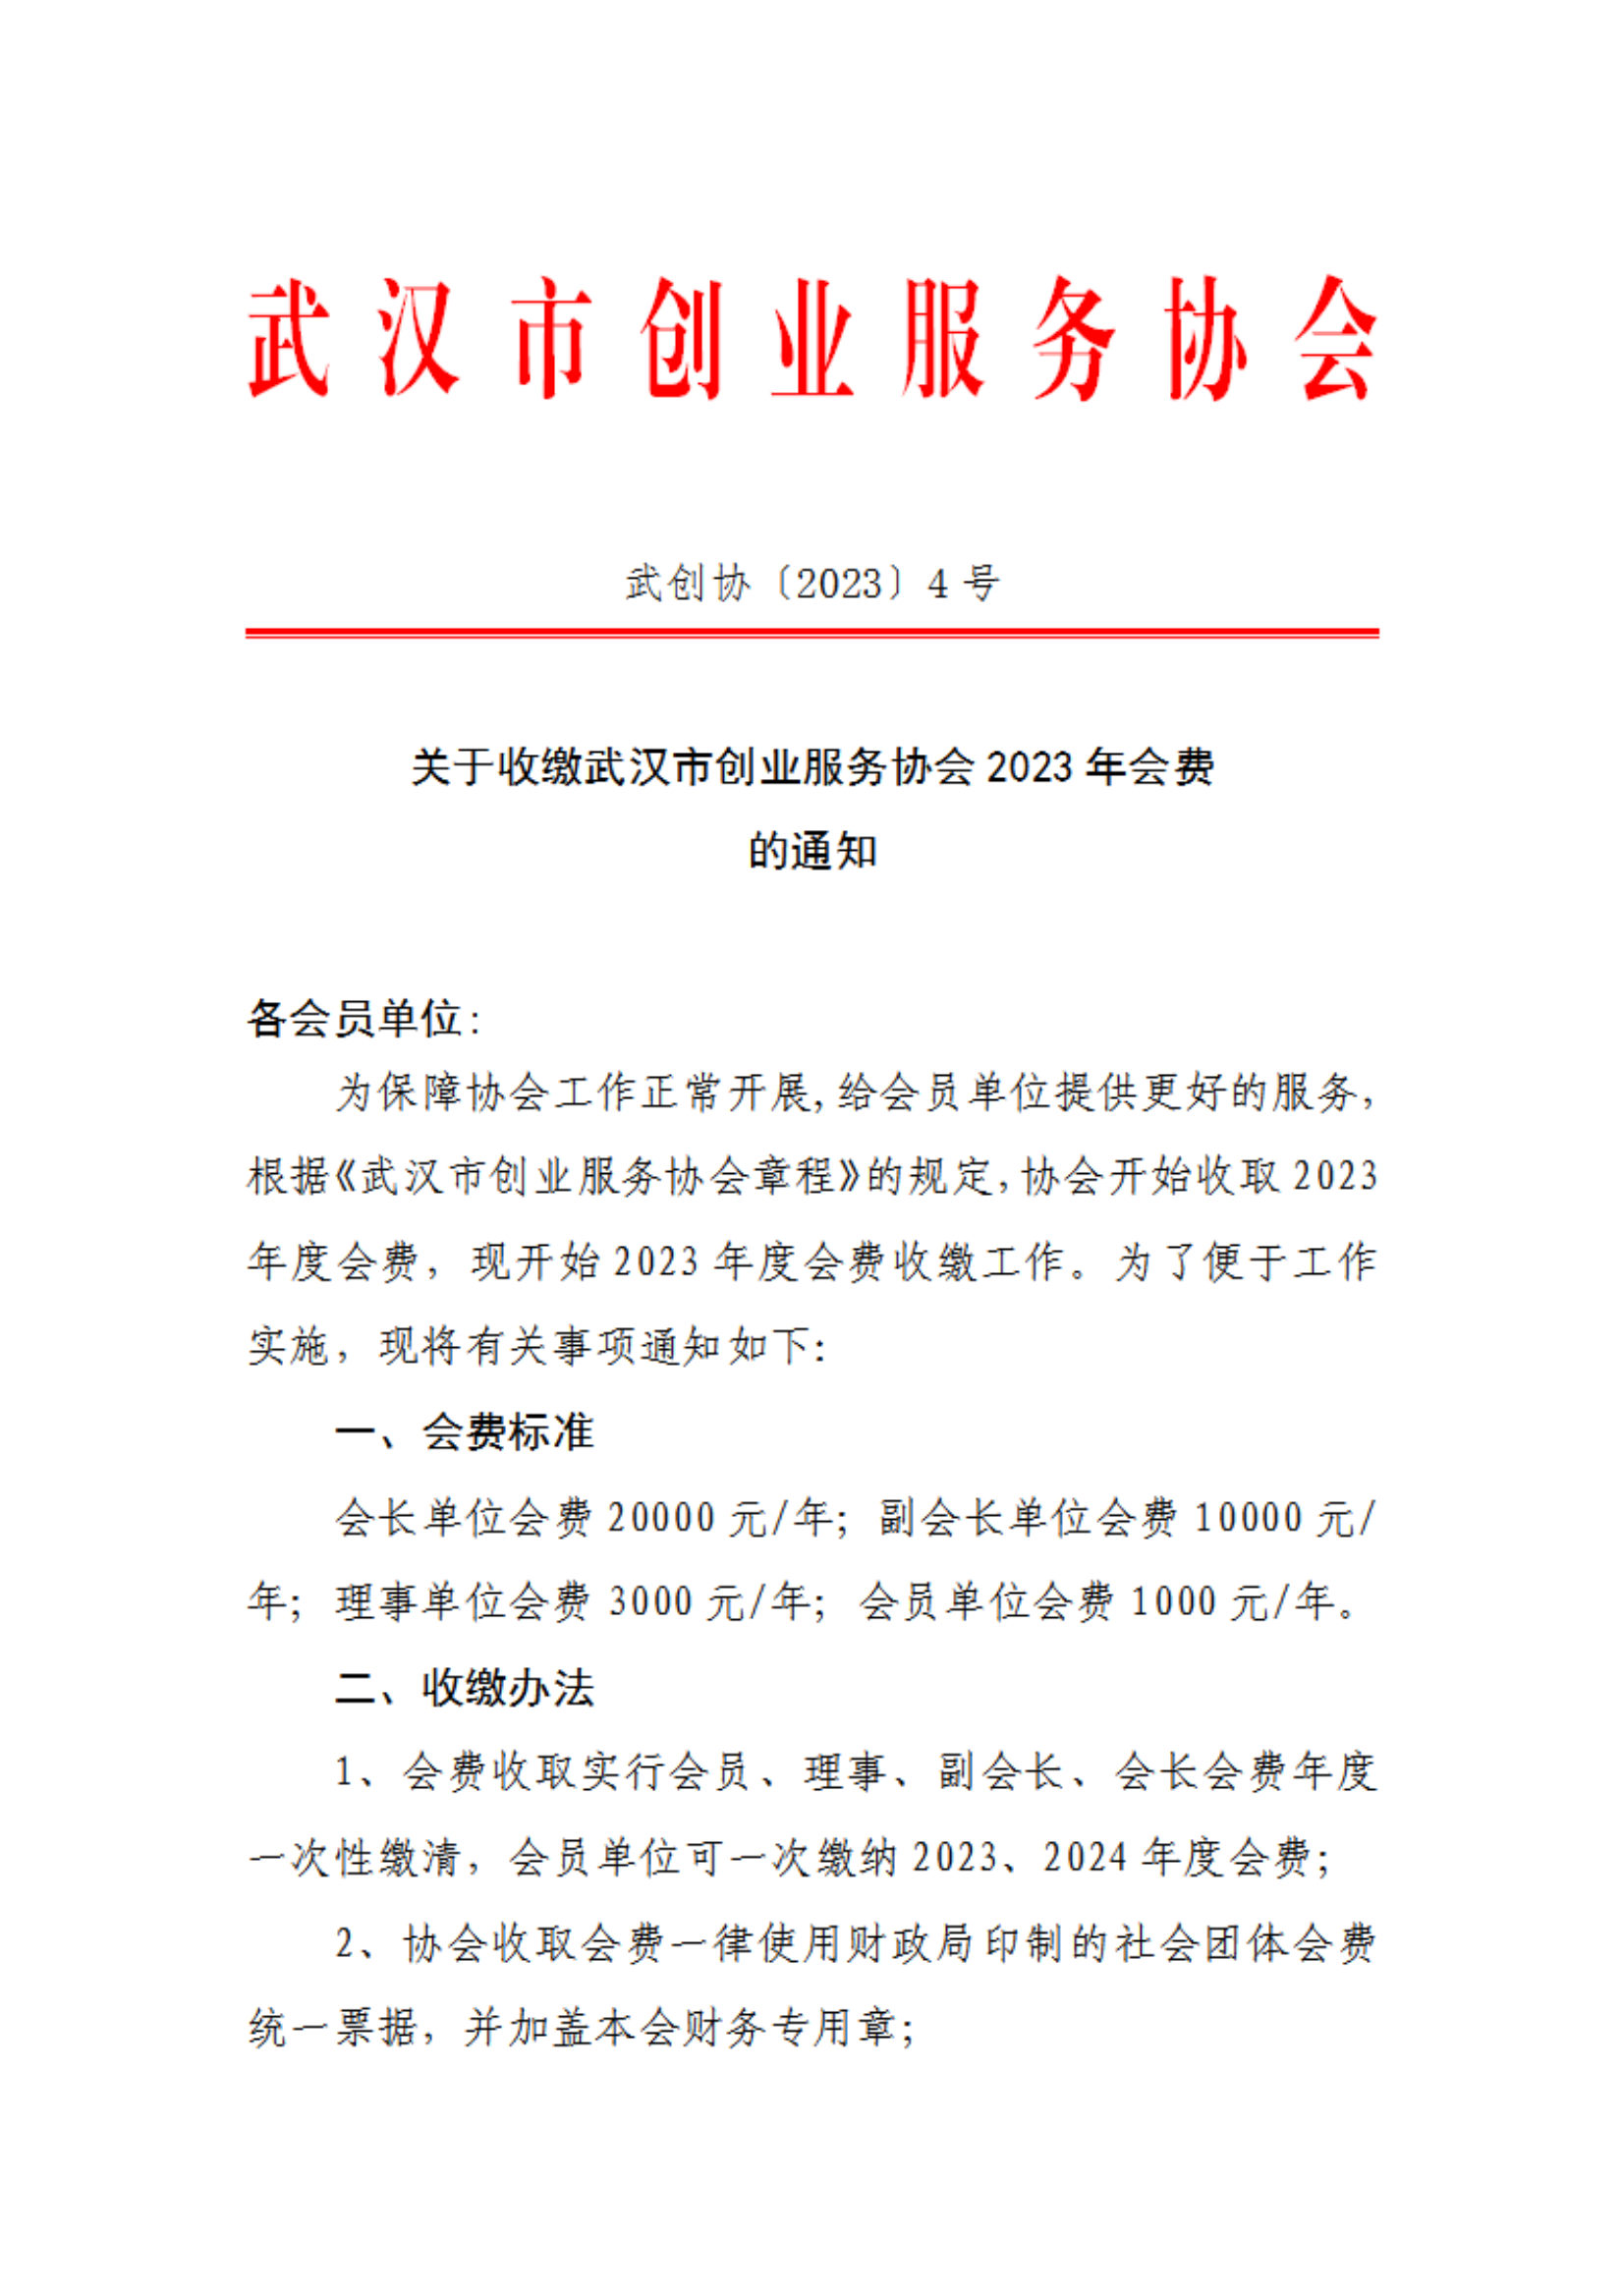 关于收缴武汉市创业服务协会2023年会费的通知(图1)